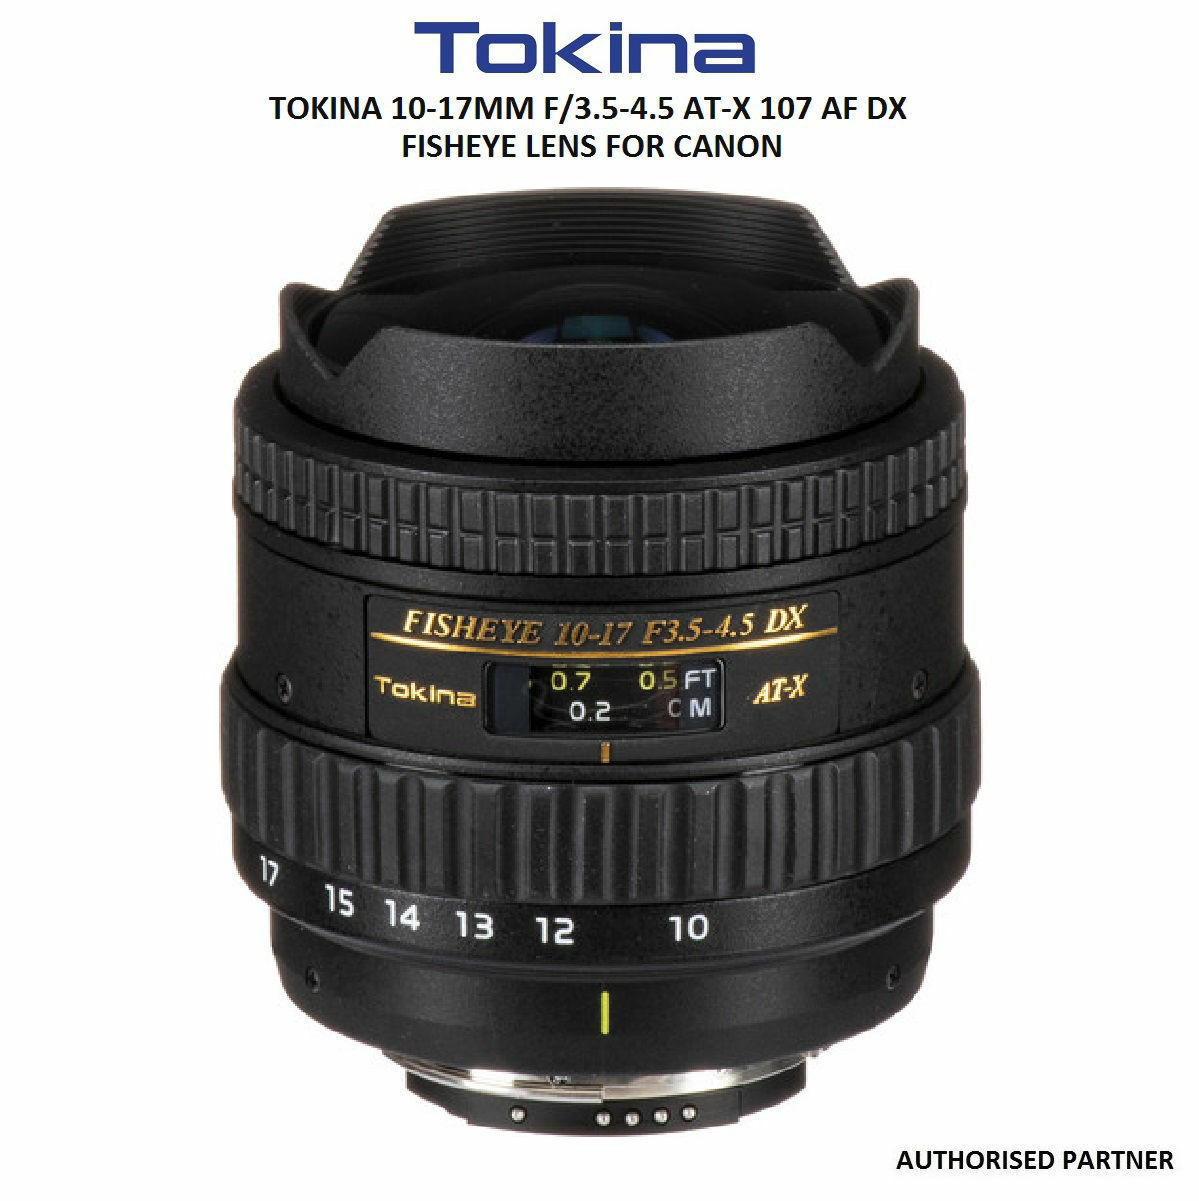 Tokina FISHEYE 10-17 F3.5-4.5 DX Canon用